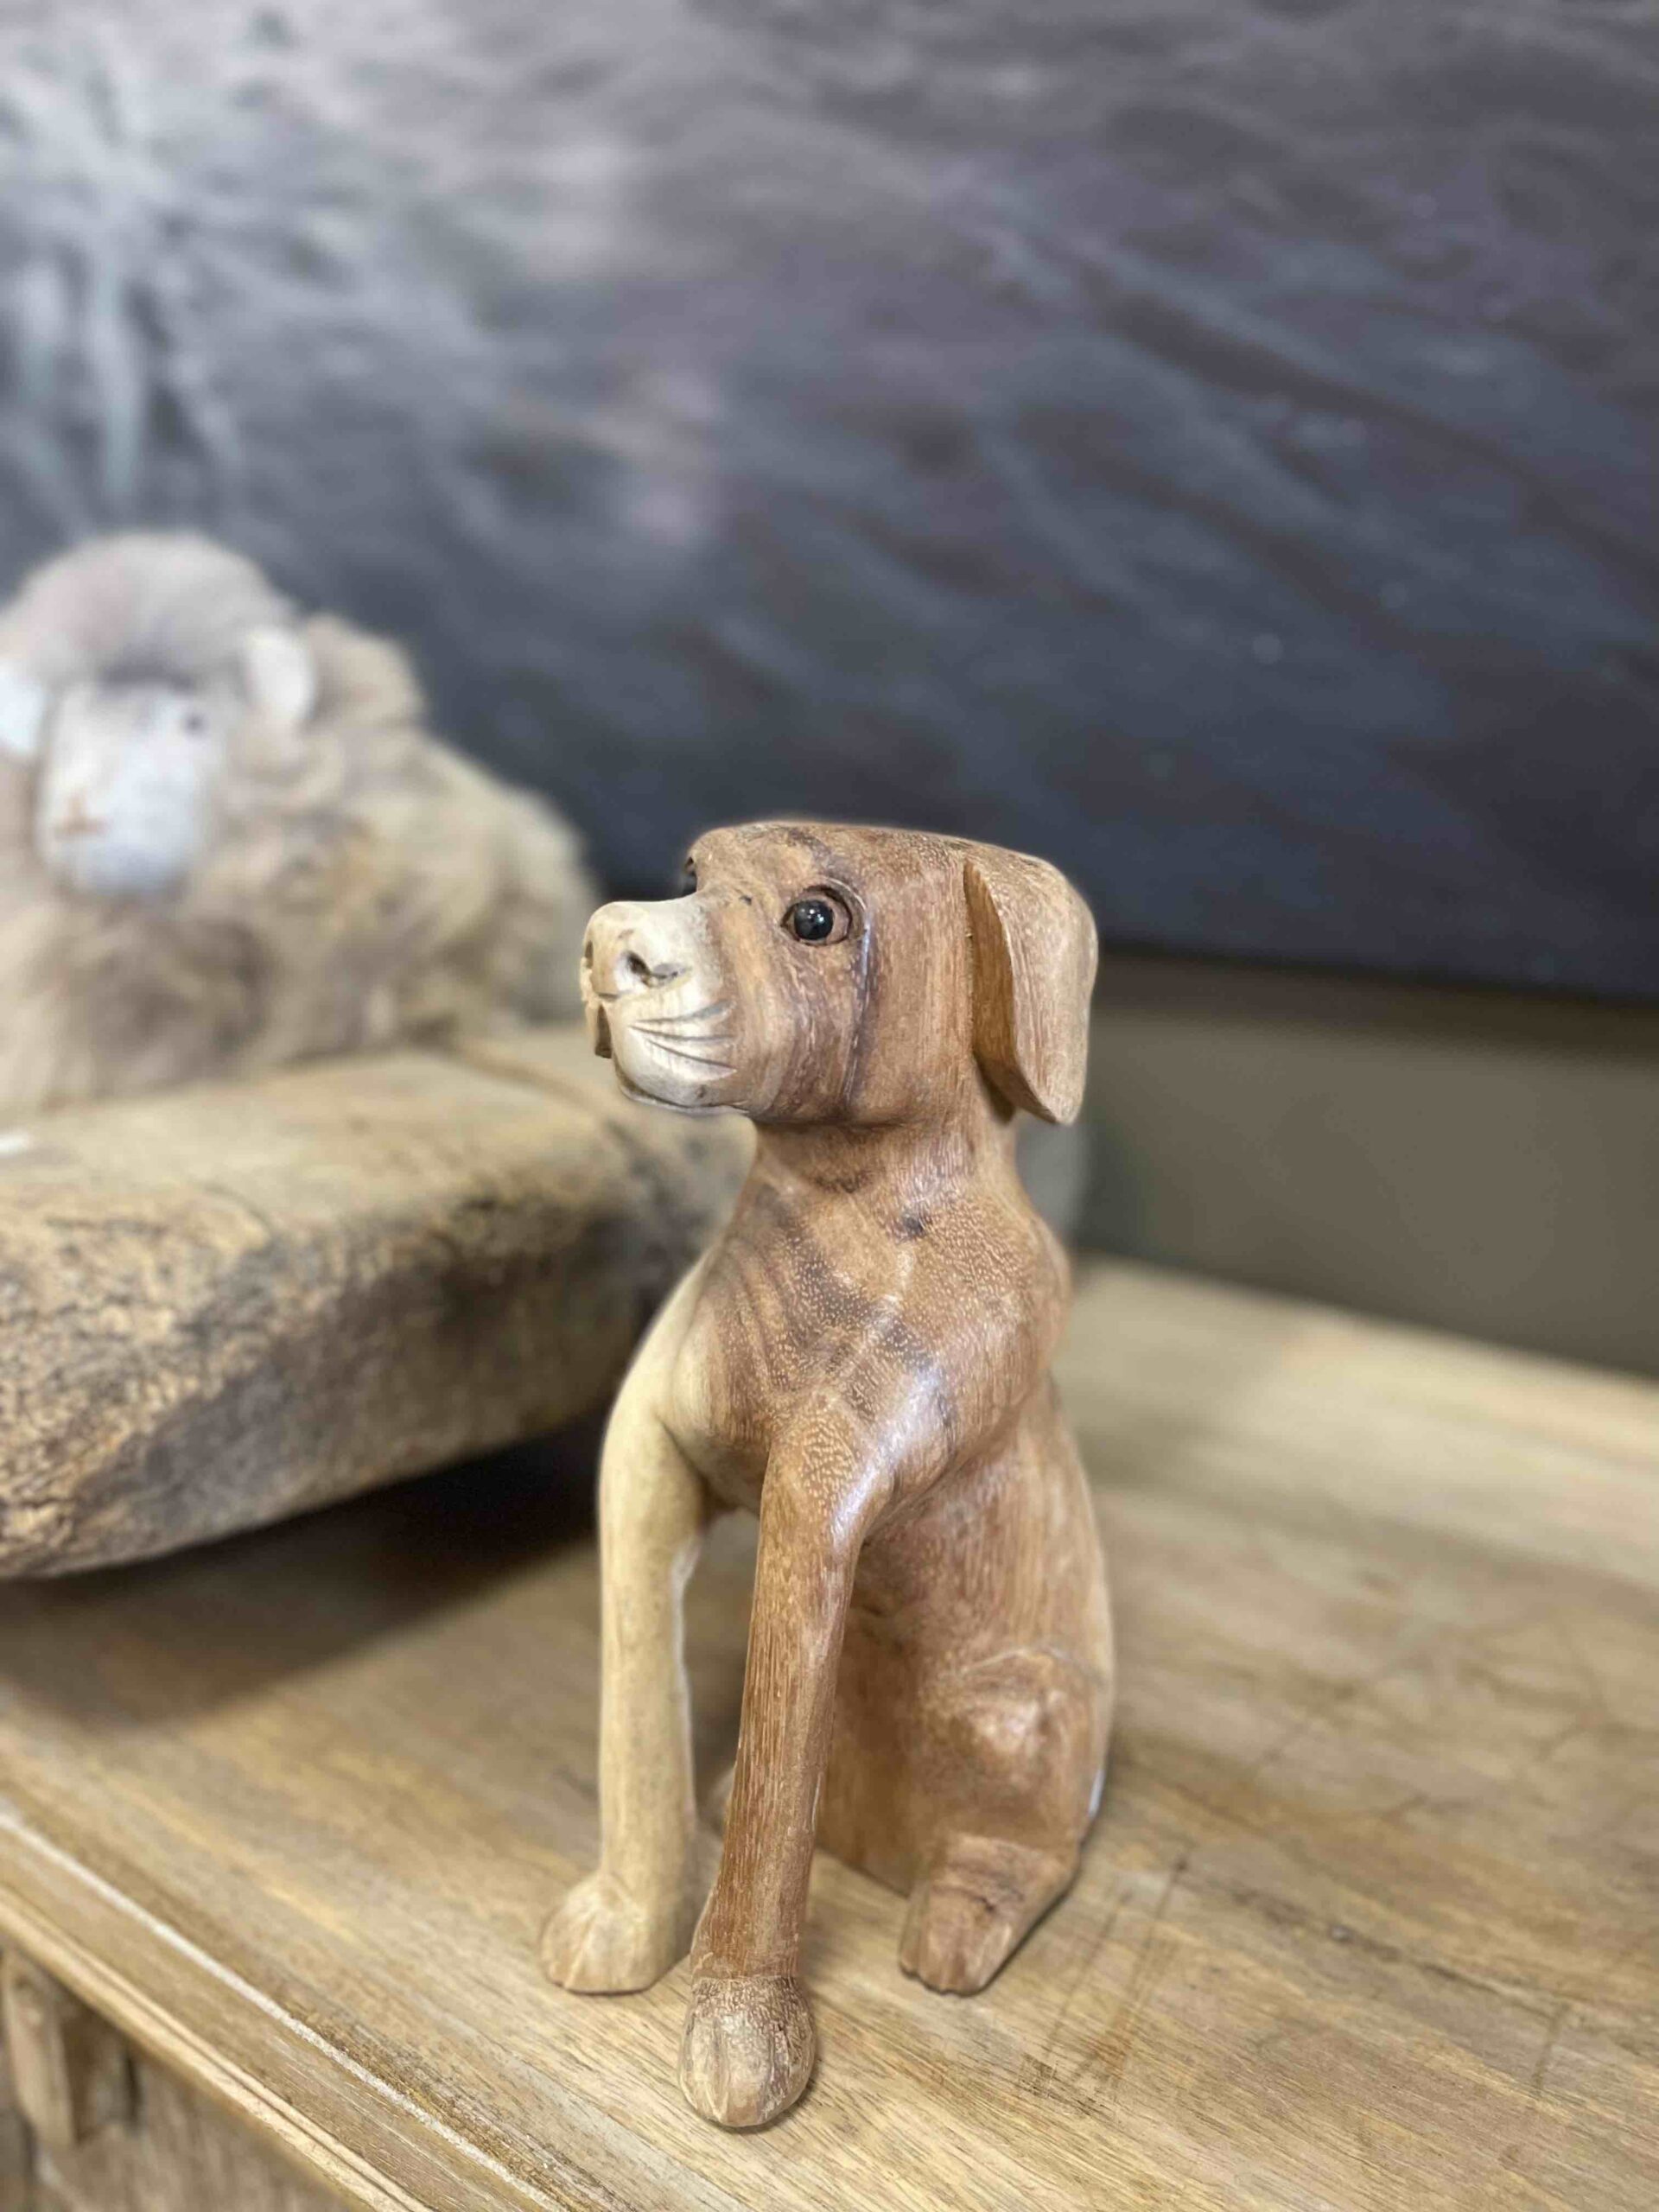 Houtsnijwerk hond is met heel veel zorg handgesneden uit een stuk suar hout.